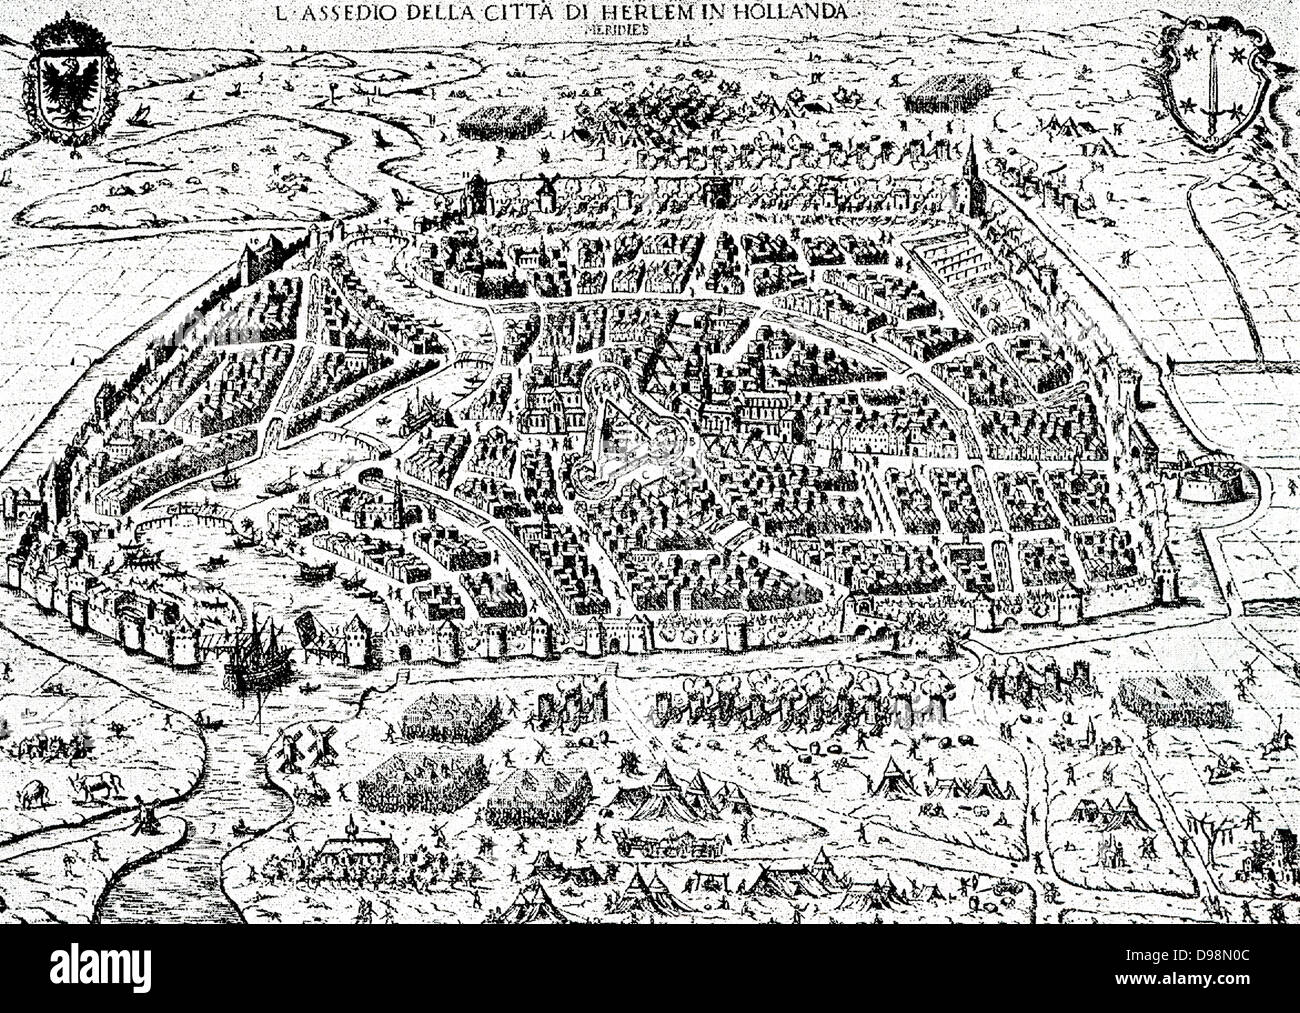 L'assedio di Haarlem è stato un episodio di ottanta anni di guerra. Dal 11 dicembre 1572 al 13 luglio 1573 un esercito di Filippo II di Spagna di cui sanguinoso assedio alla città di Haarlem nei Paesi Bassi, la cui fedeltà aveva cominciato a vacillare durante l'estate precedente. Dopo la battaglia navale di Haarlemmermeer e la sconfitta di una terra forza di rilievo, gli affamati città si arrese e la guarnigione fu massacrata. La resistenza è stata comunque presa come un esempio eroico dal Orangists presso gli assedi di Alkmaar e Leida. Foto Stock